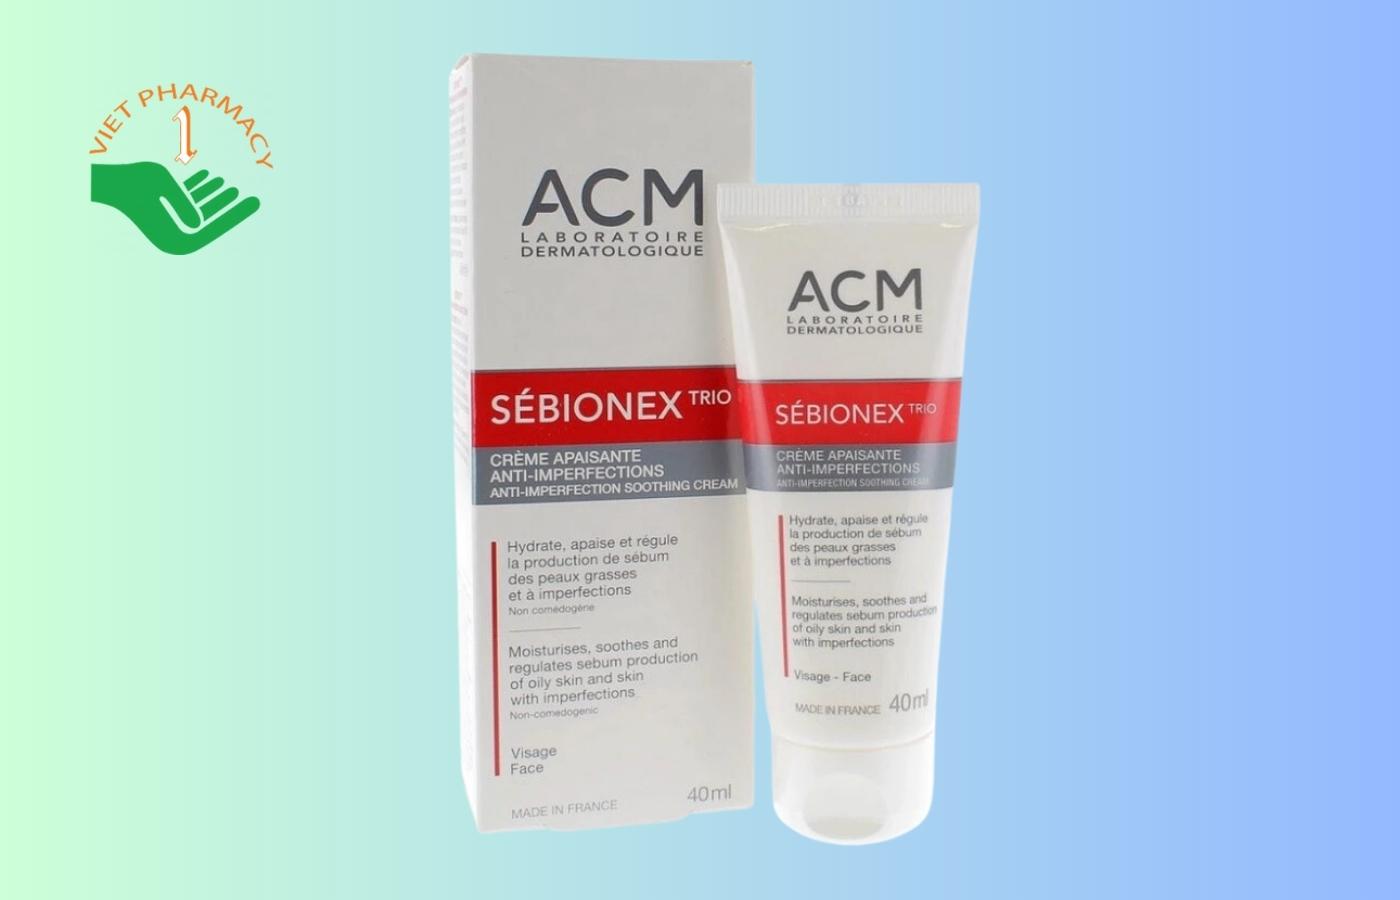 ACM Sebionex Trio Anti-Imperfection Soothing Cream